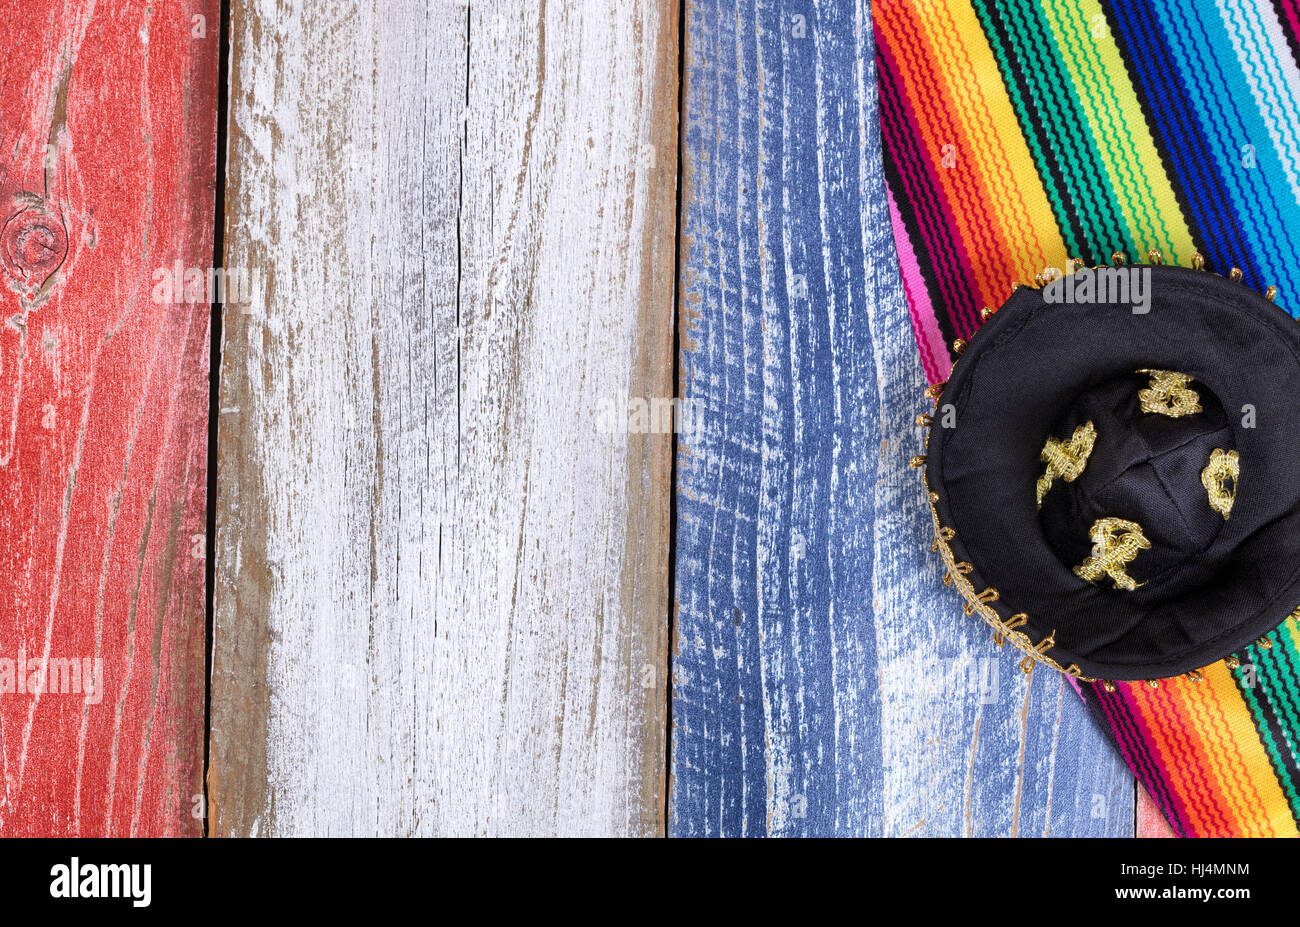 Cinco De Mayo Ferienkonzept in USA mit mexikanischen Hut und Tischset Tüchern auf rustikalen Holz lackiert traditionelle Farben der Vereinigten Staaten. Stockfoto